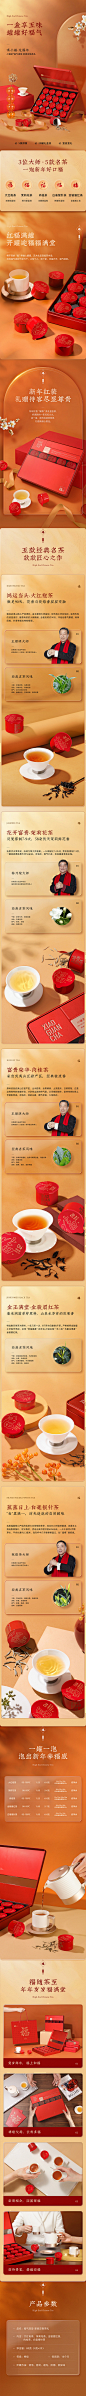 【年货】小罐茶红罐春节定制拼装乌龙茶大红袍红茶茶叶礼盒装80g-tmall